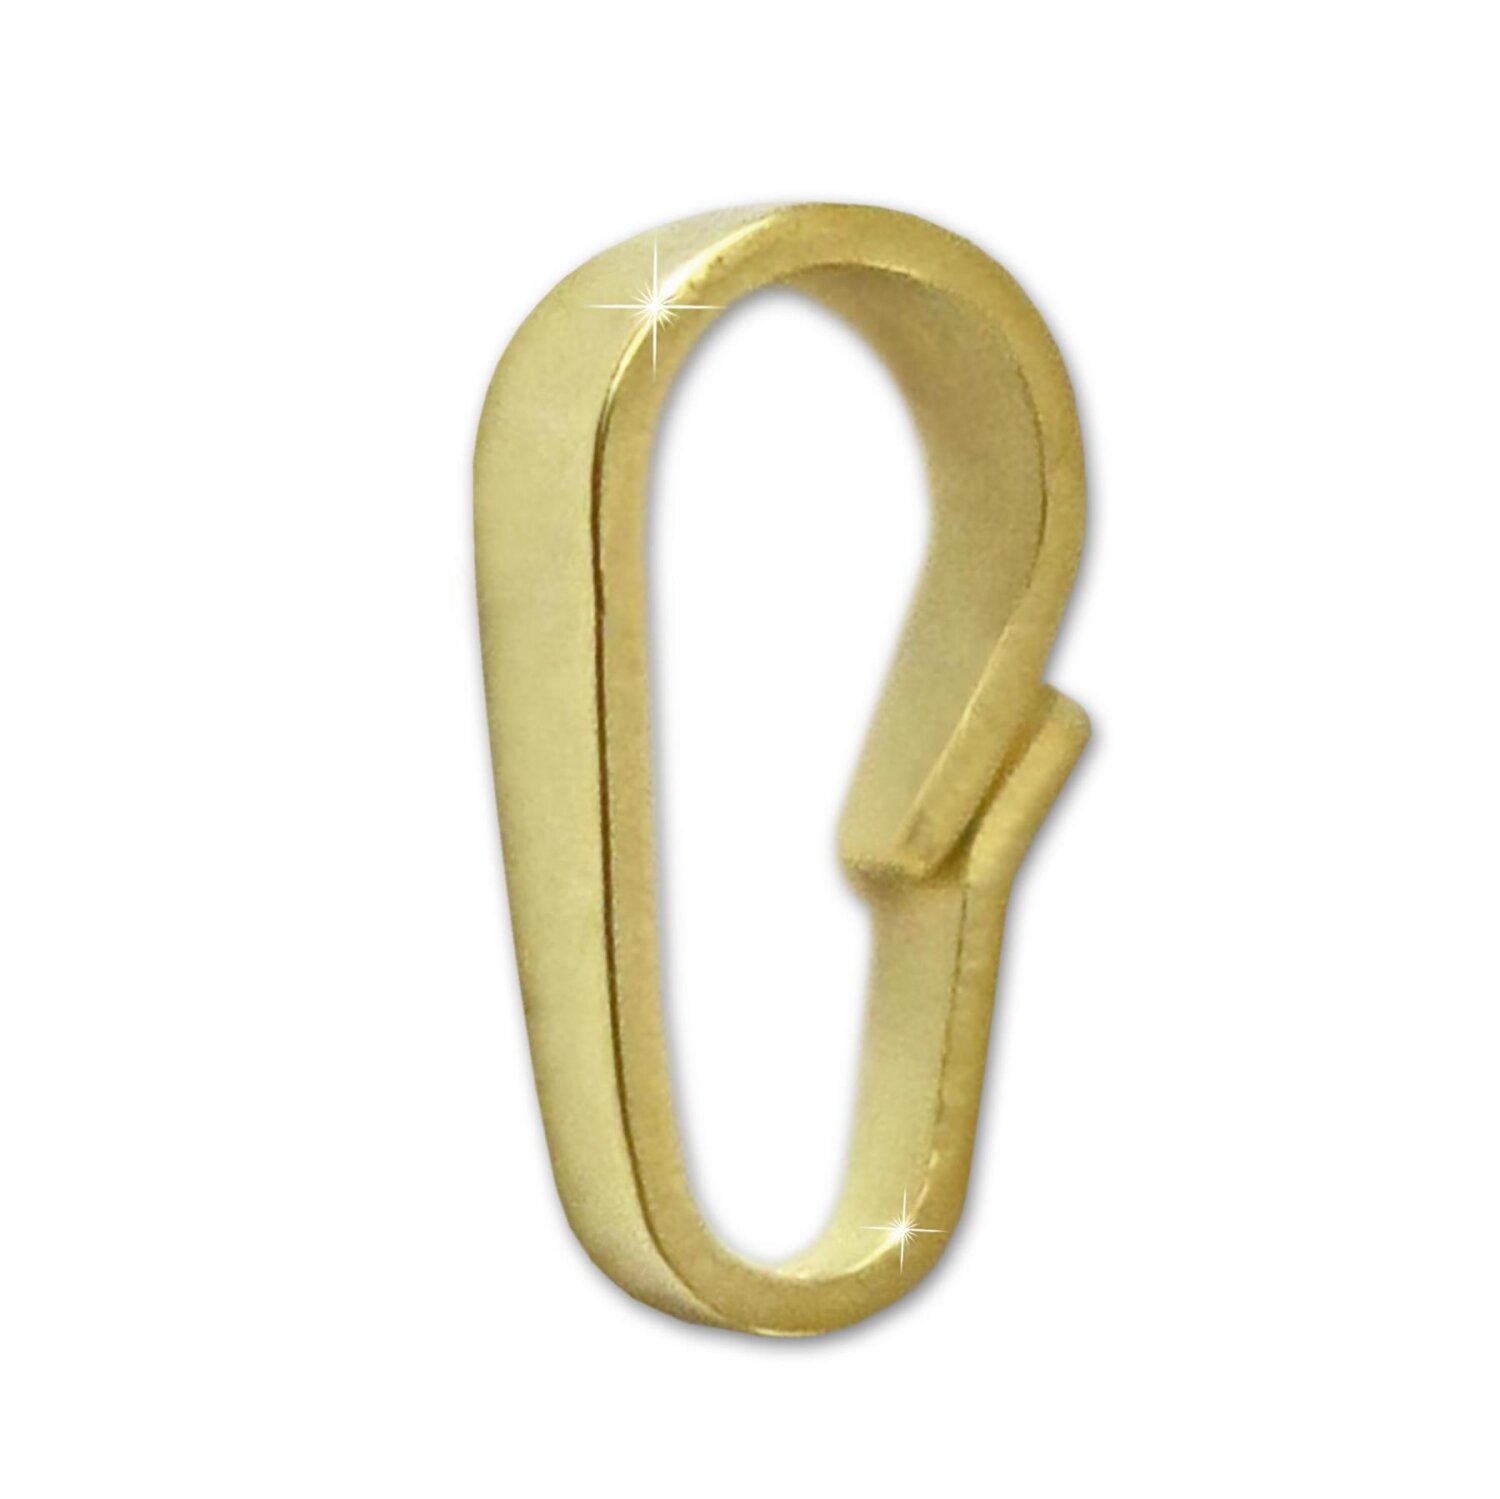 Gold Kettenöse 6 mm Kettenschlaufe 333 Gold Ersatz für Goldschmuck Reparatur